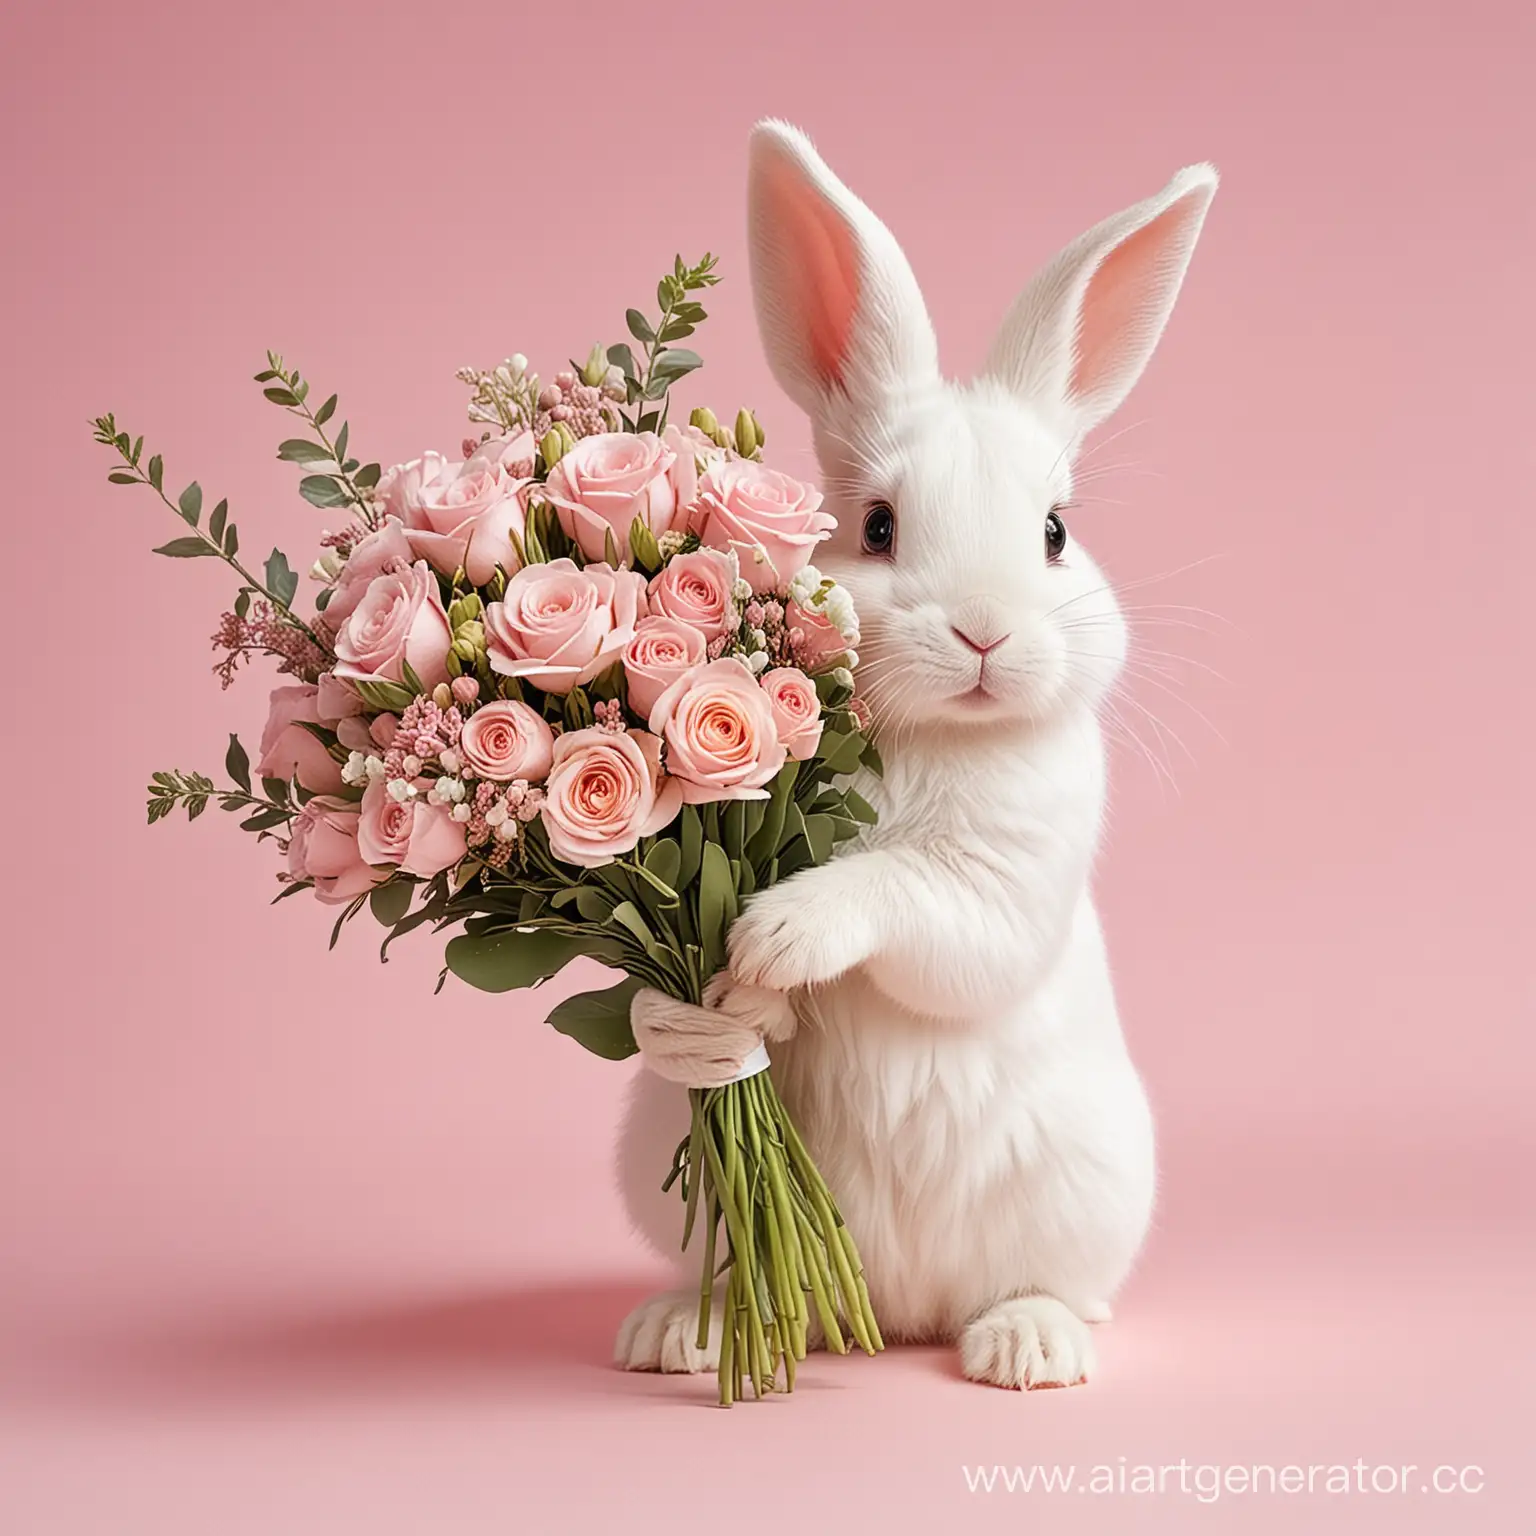 милый маленький белый зайчик с длинными ушками с букетом цветов, светло-розовый фон, фешн стиль, акриловая прорисовка